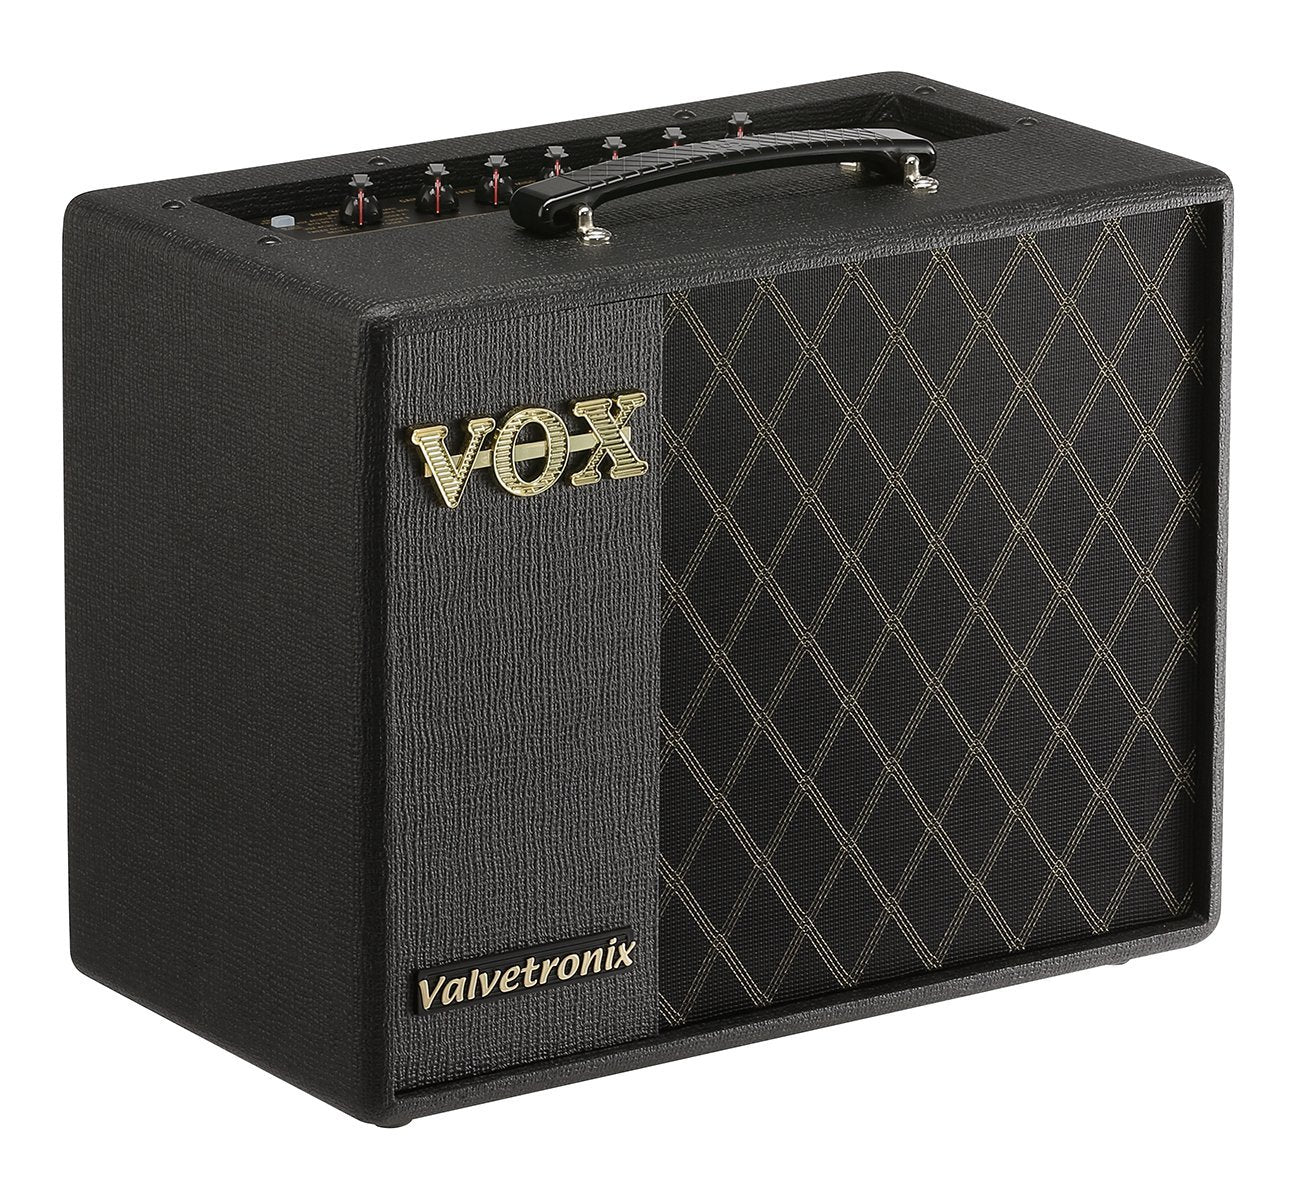 Vox VT20X Valvetronix VTX